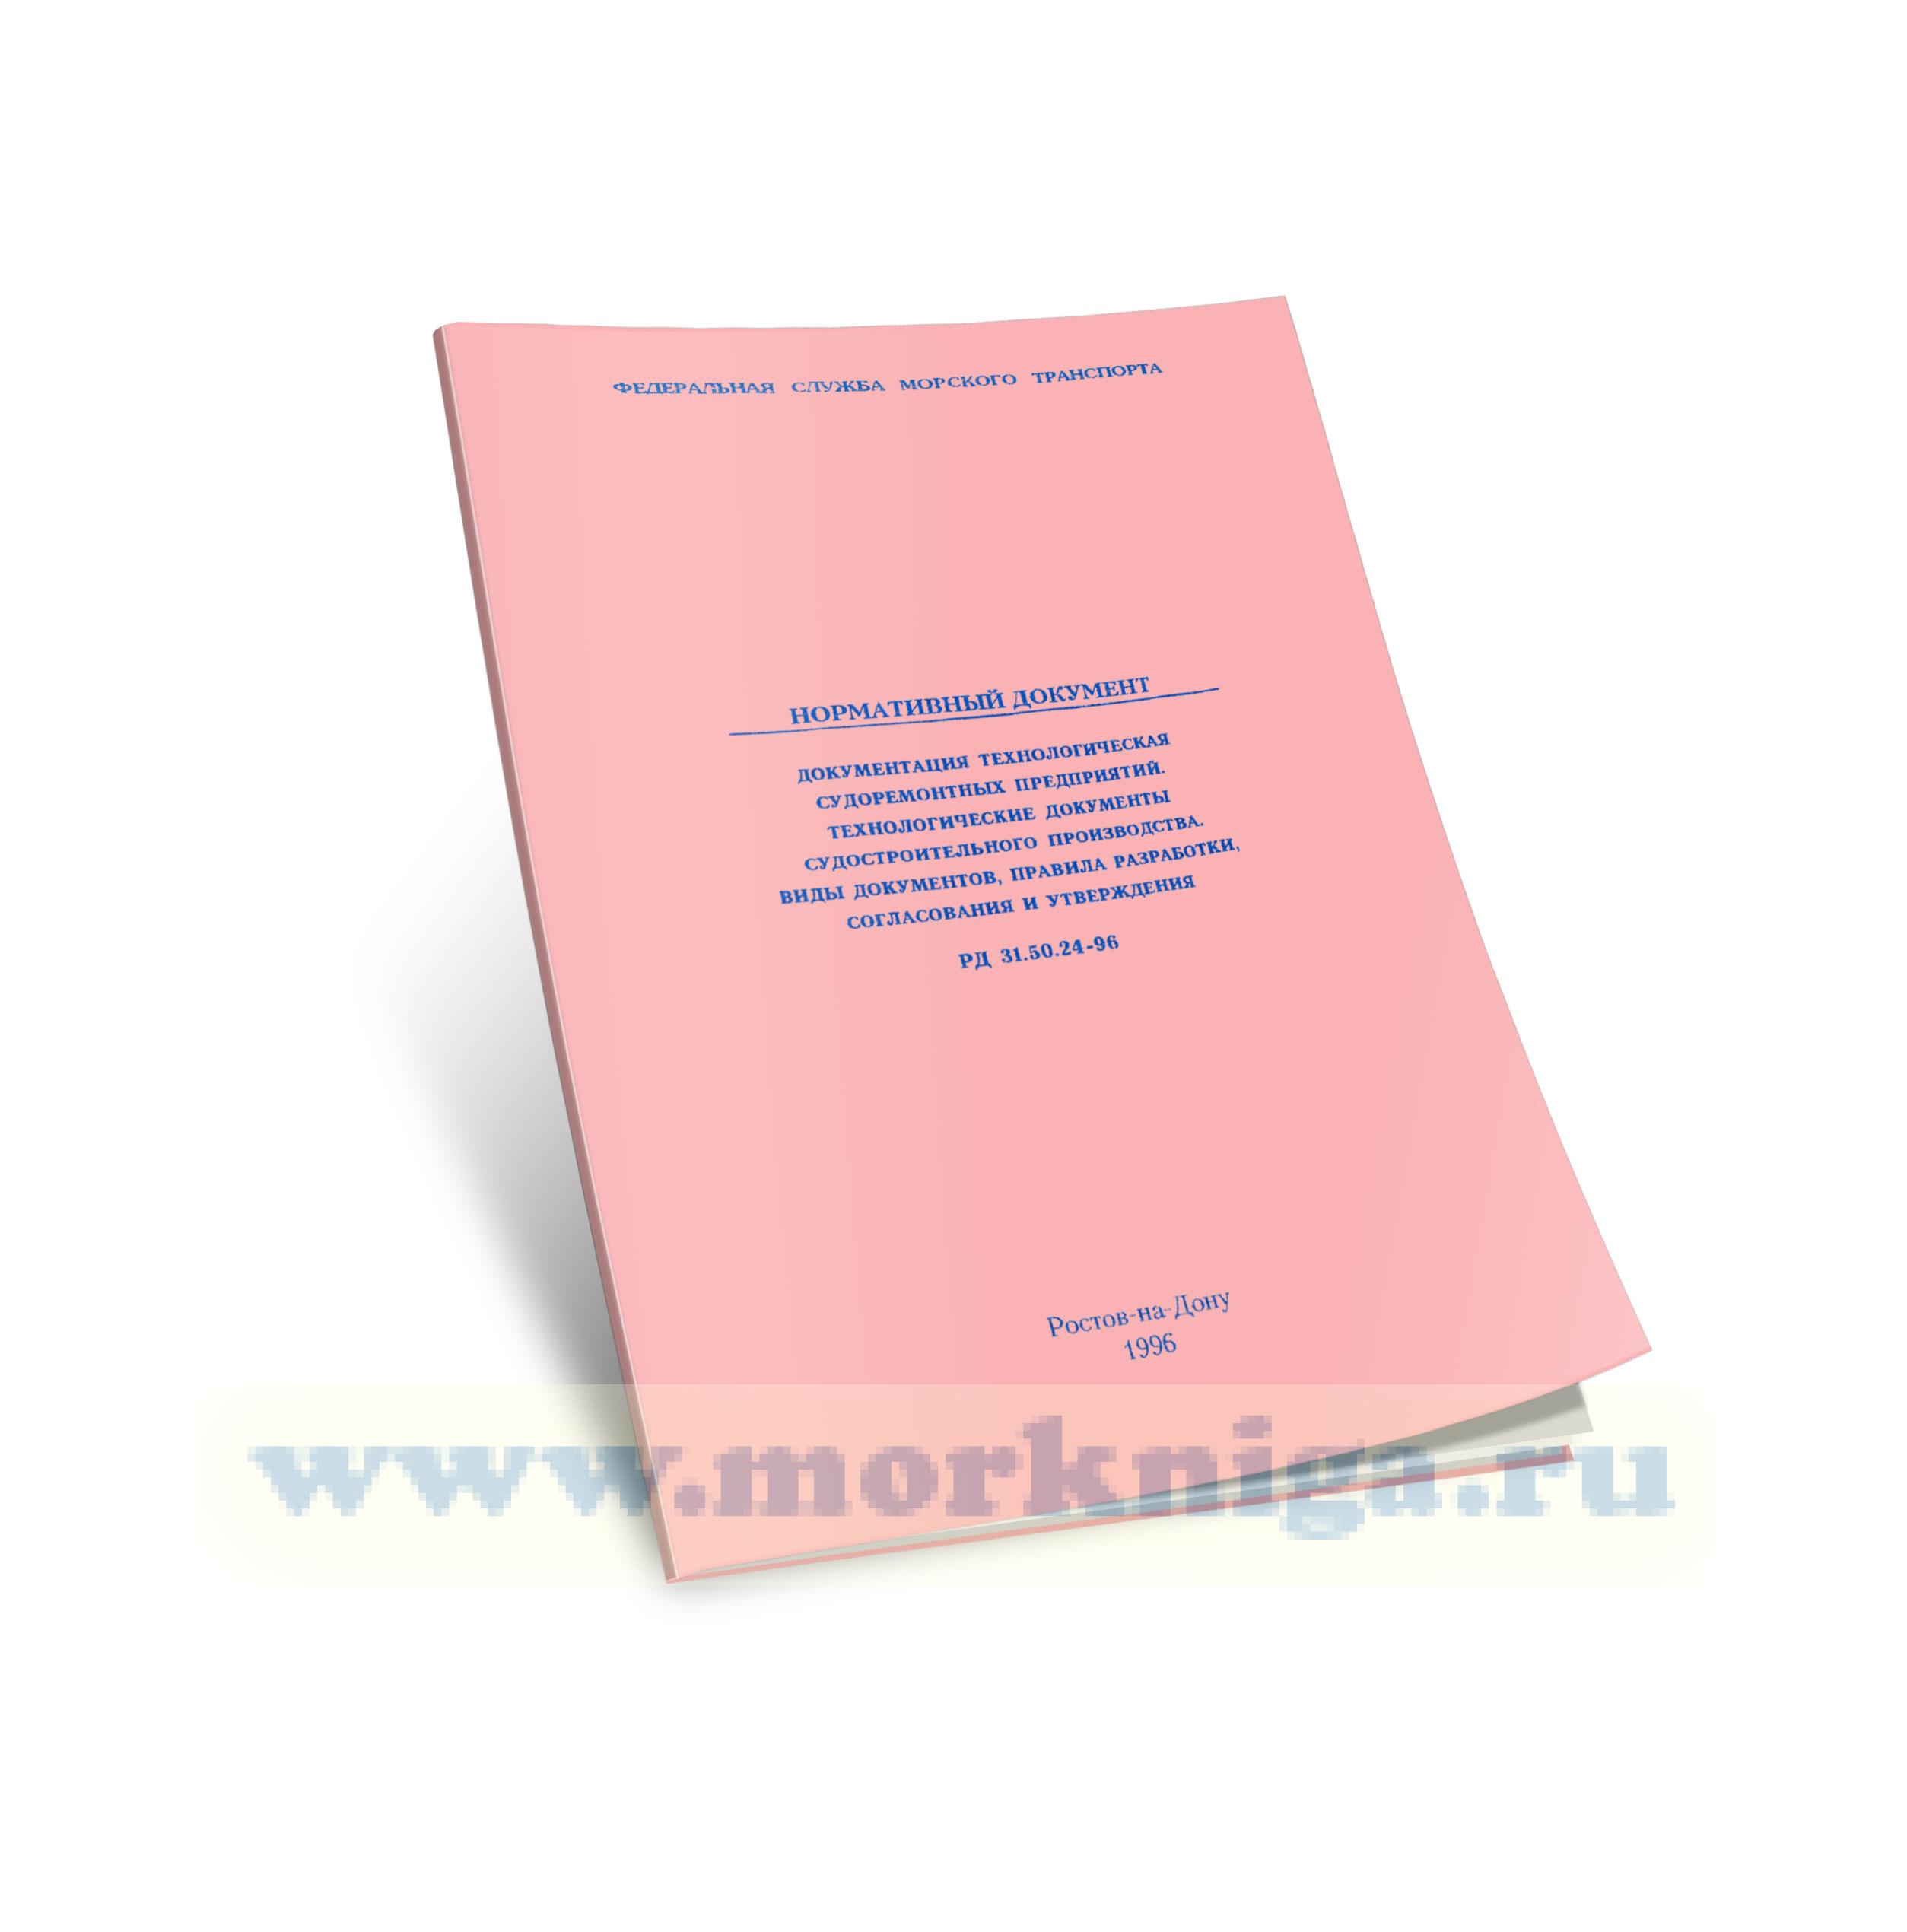 РД 31.50.24-96 Документация технологическая судоремонтных предприятий